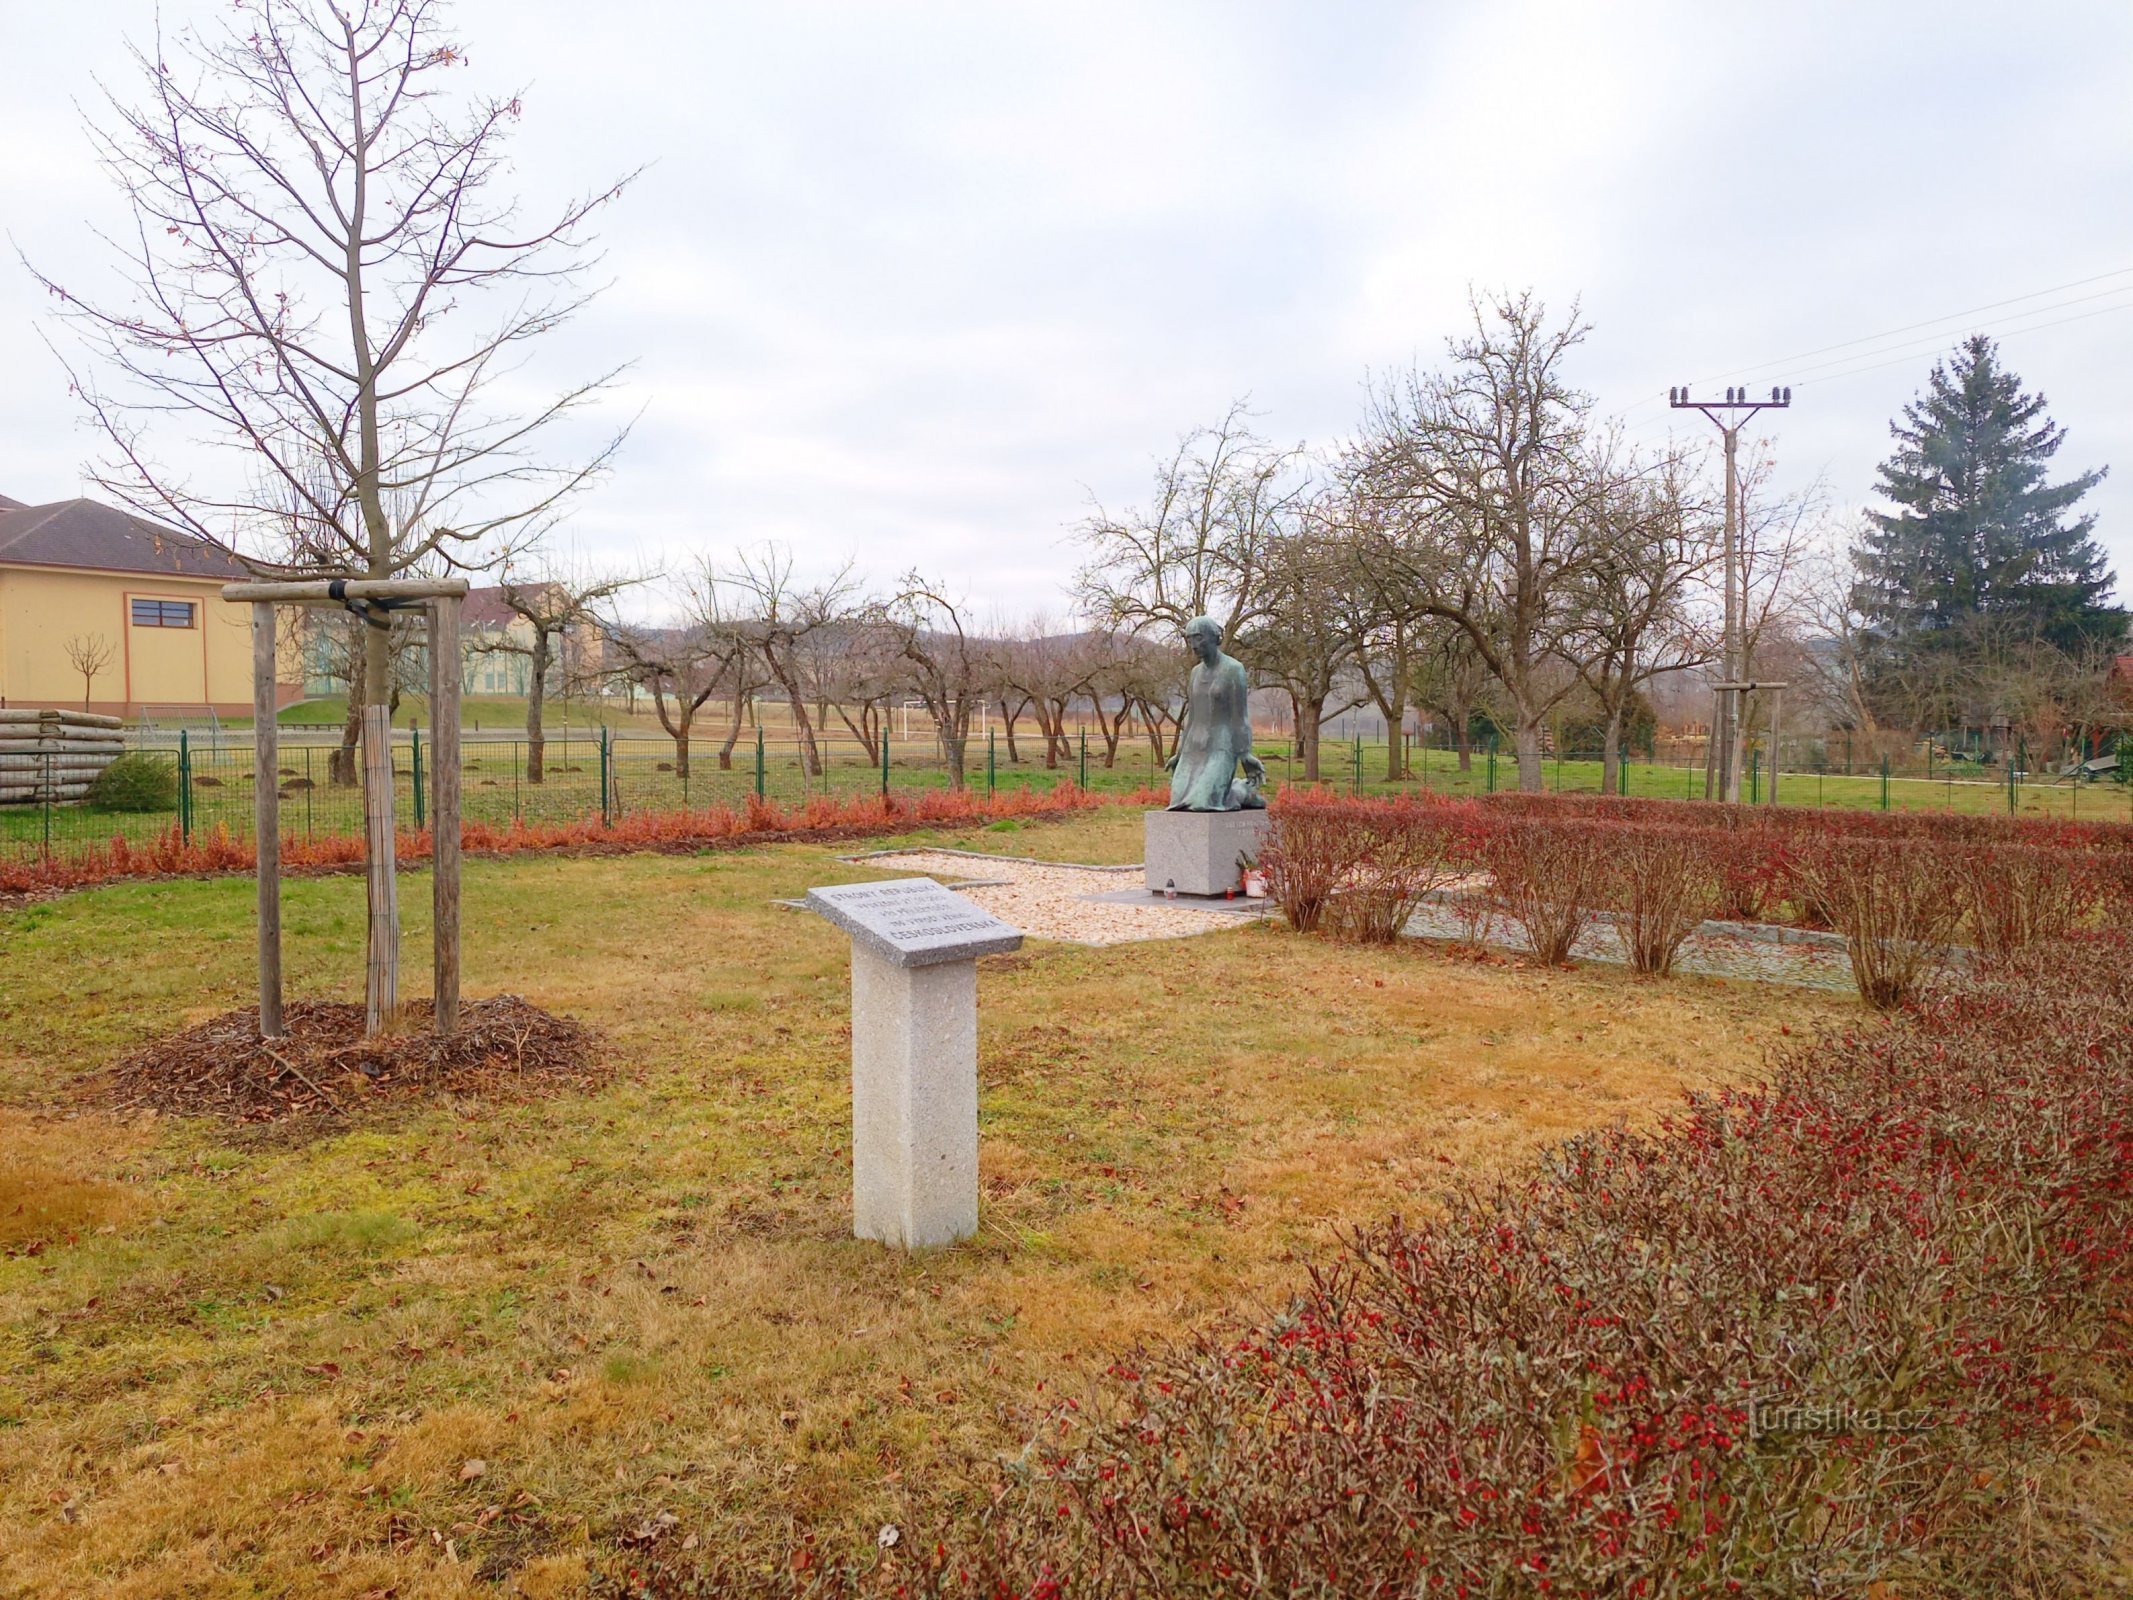 2. Monumento às vítimas da guerra em Sedlec